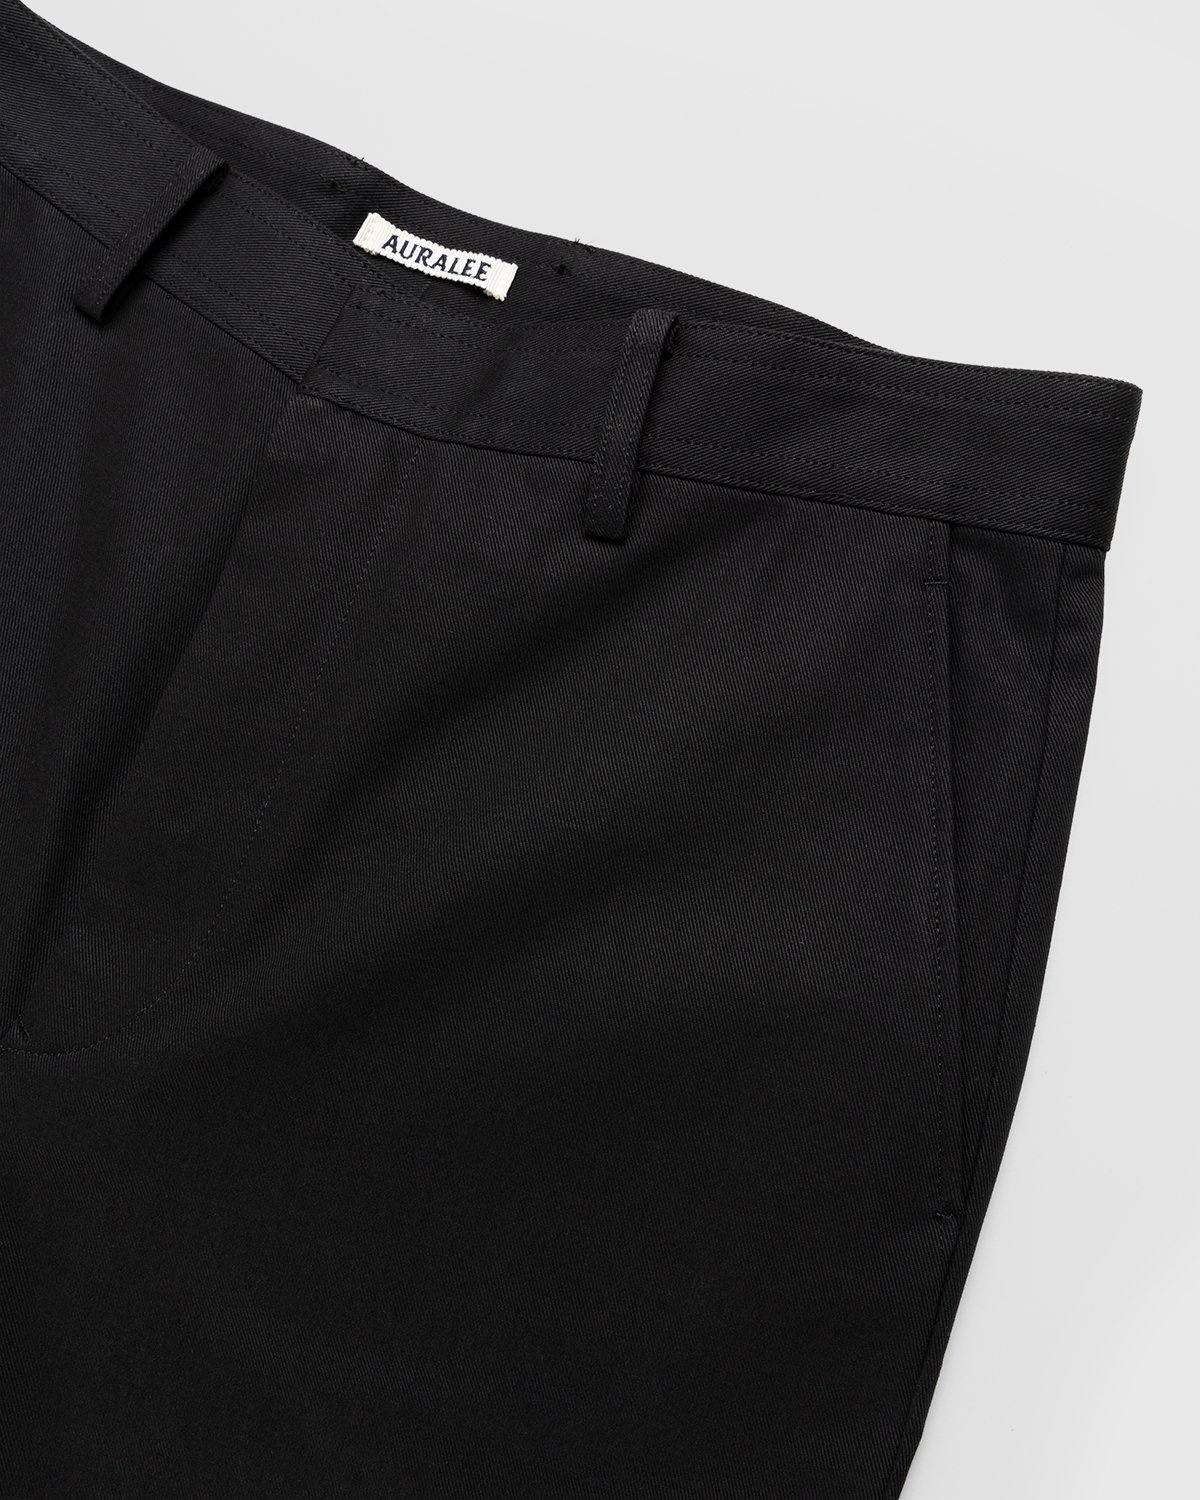 Auralee – Cotton Woven Pants Black - Trousers - Black - Image 5